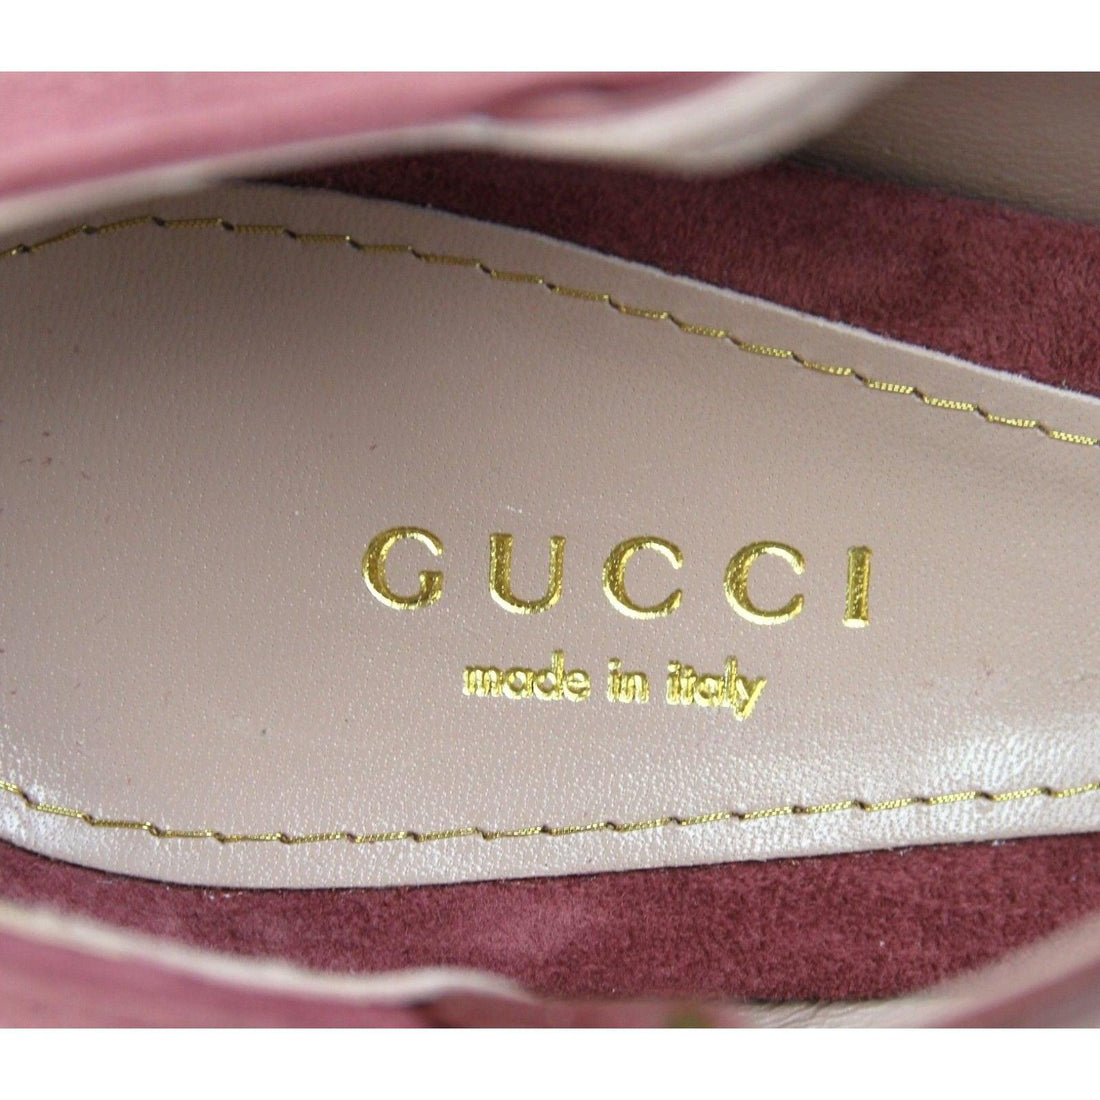 Gucci Women Tibet Red Suede High Heel Pump Shoes